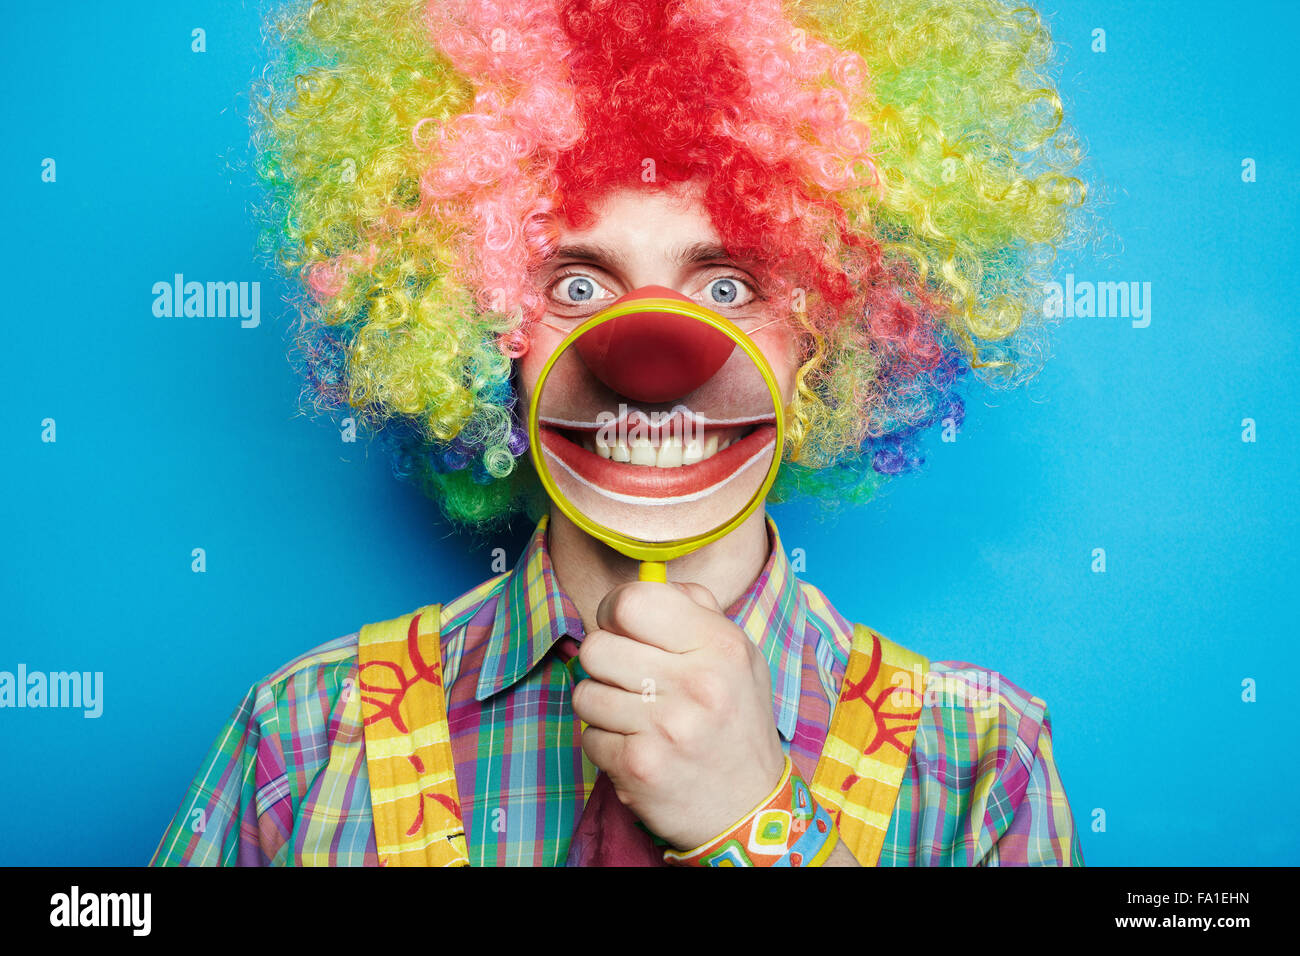 Avec le clown joyeux Portrait grand sourire sur un fond bleu Banque D'Images